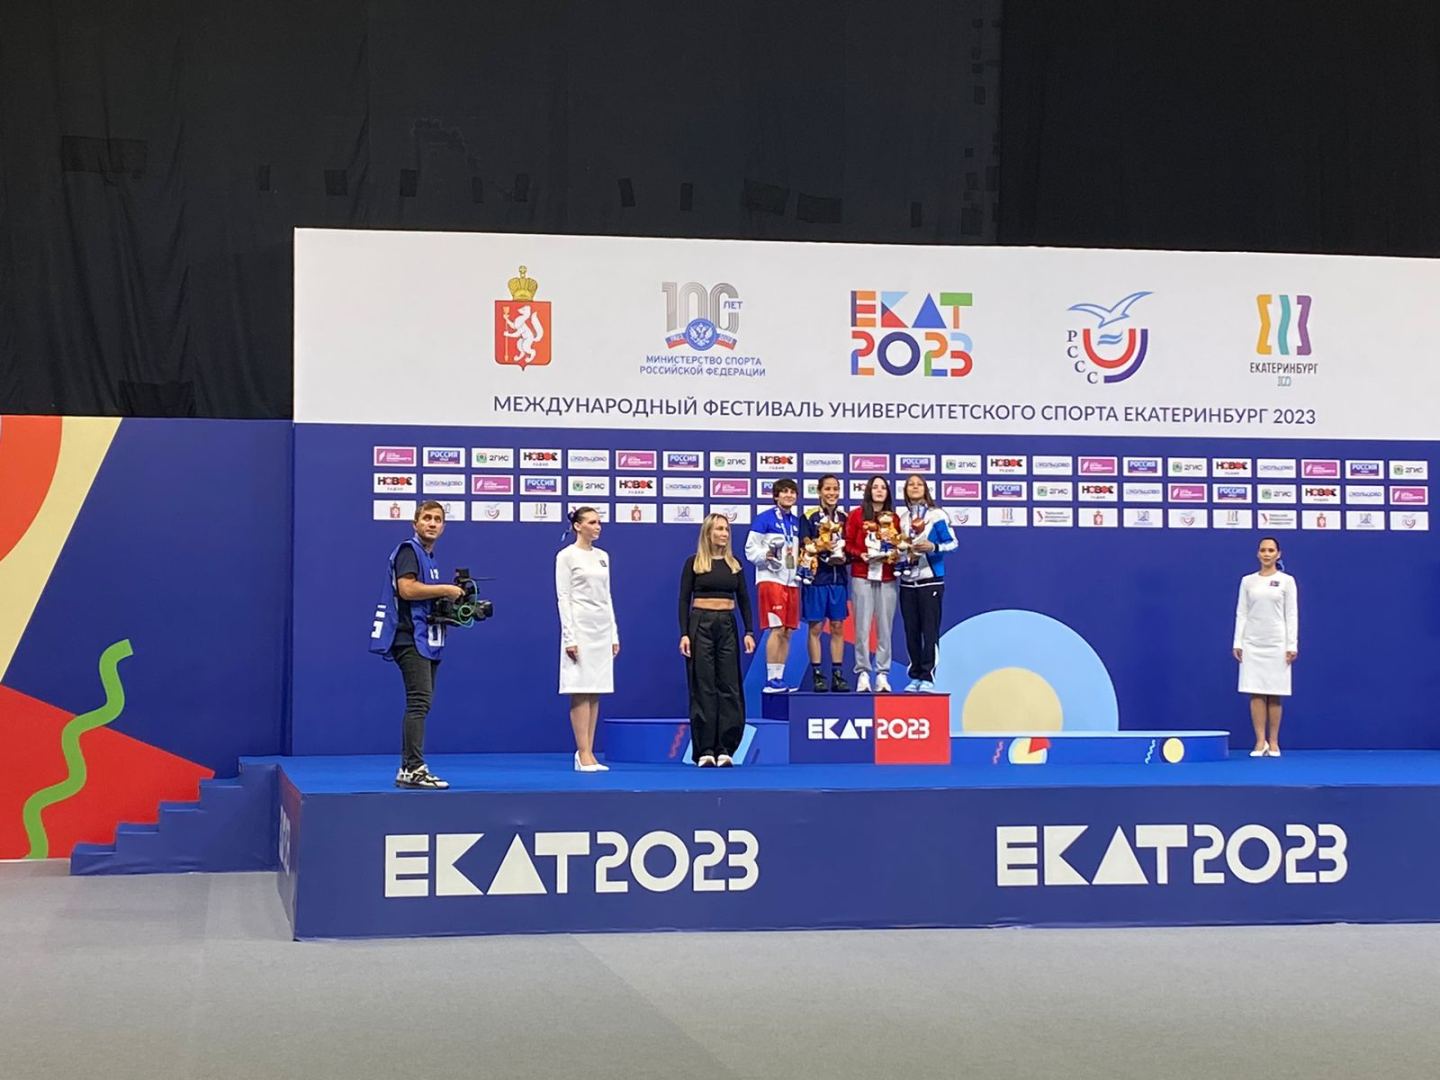 Azərbaycanlı boksçular beynəlxalq yarışda gümüş və bürünc medal əldə ediblər (FOTO)